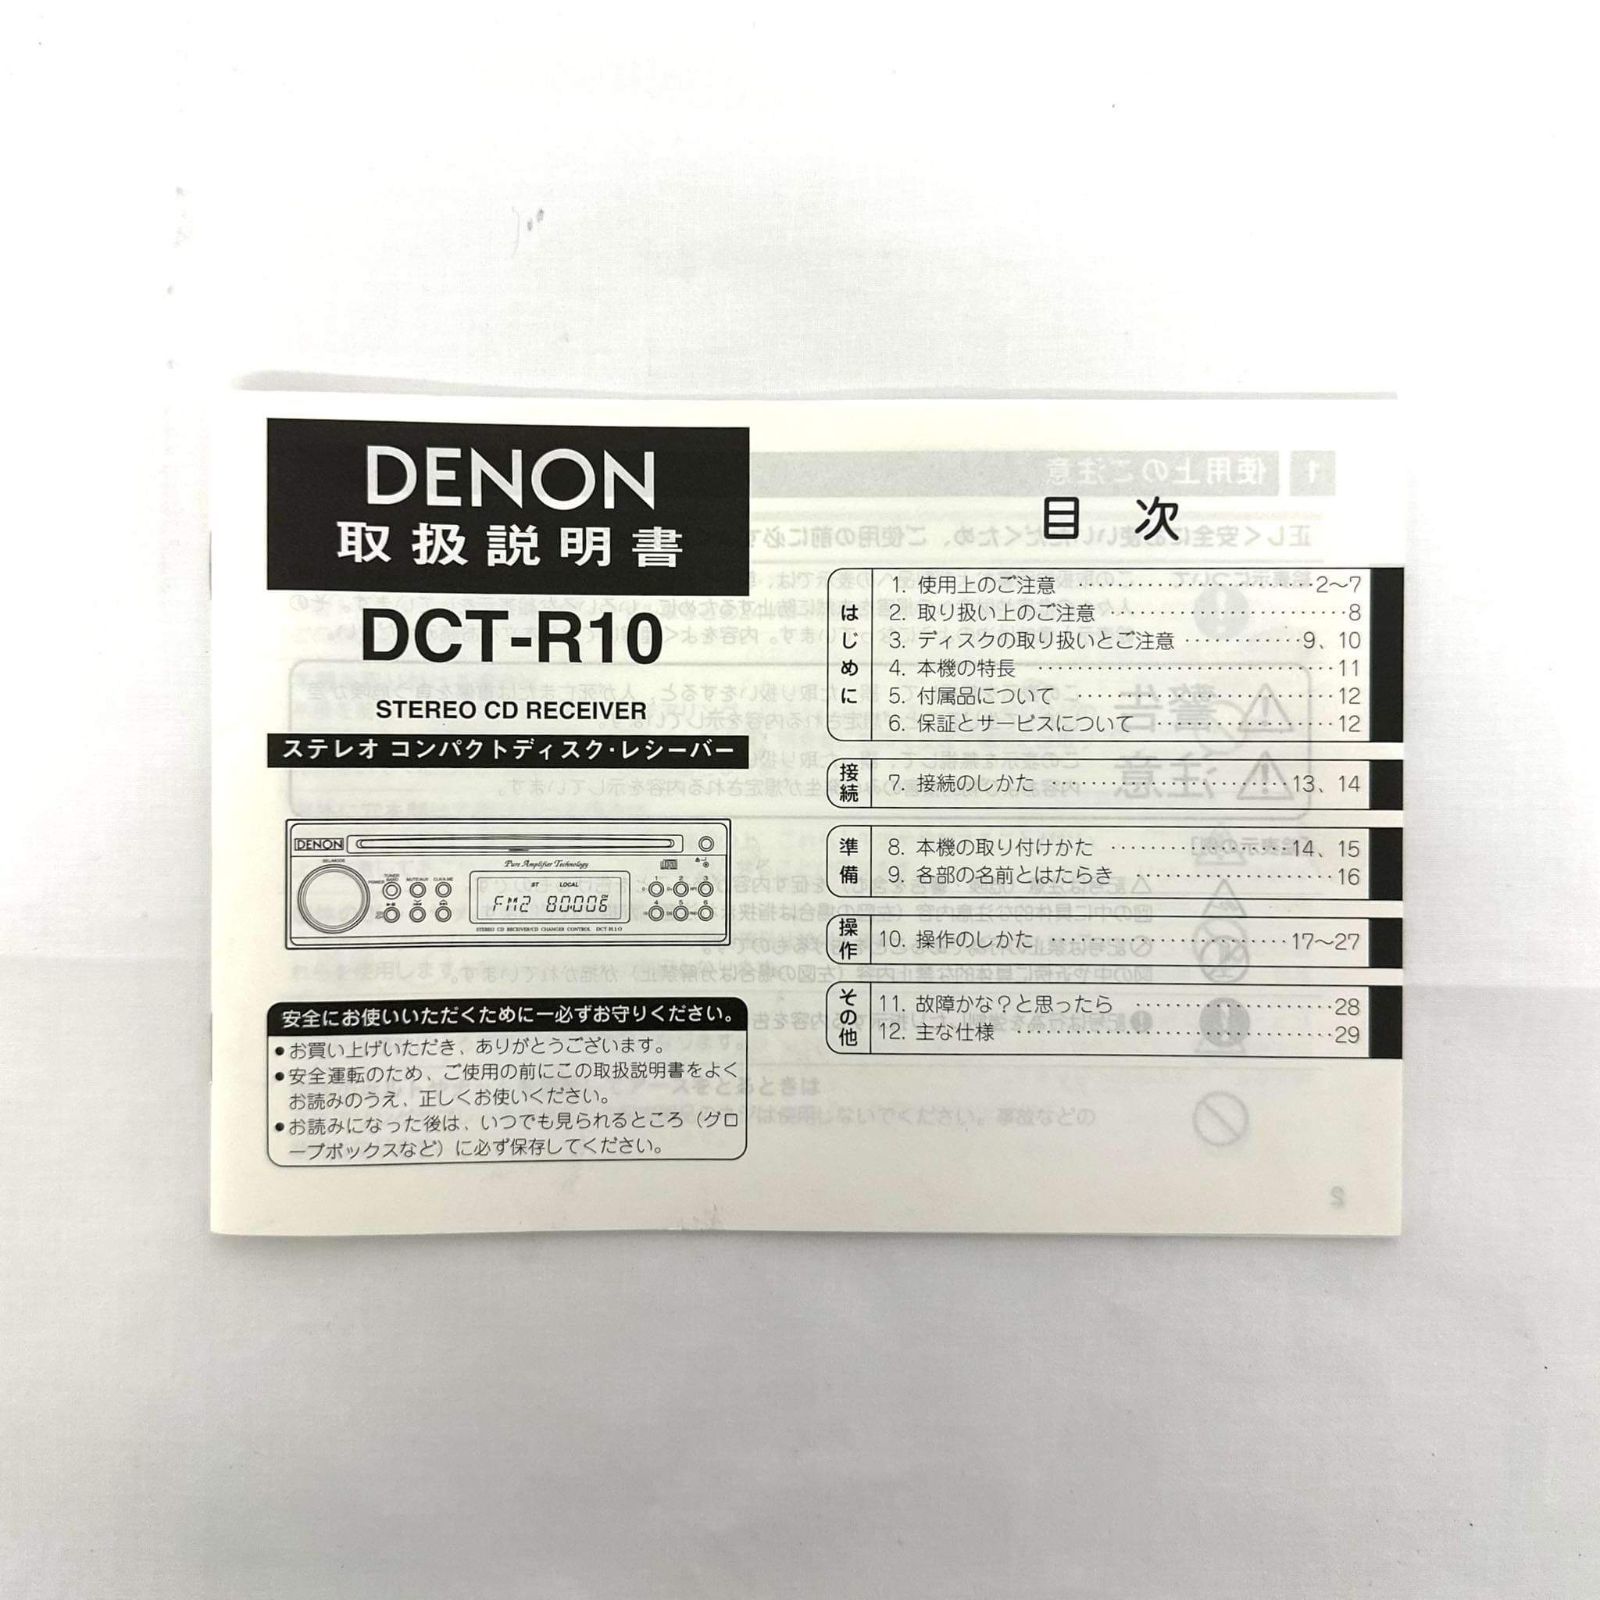 最低価格の DENON DCT-R10 1DIN CDレシーバー 美品です ienomat.com.br